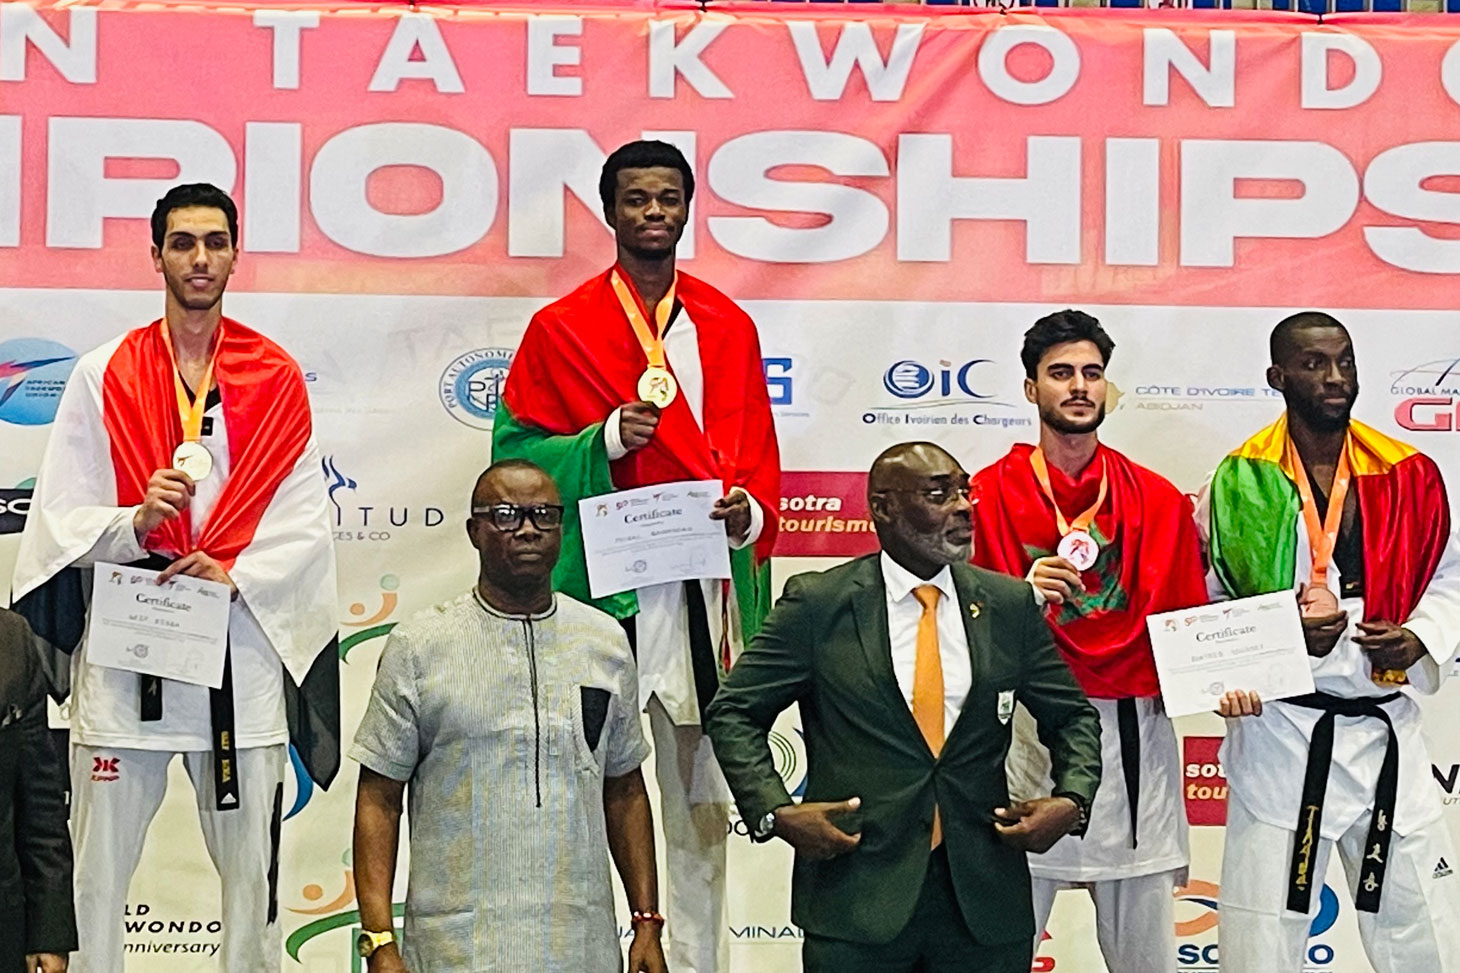 Faysal Sawadogo sur la plus haute marche des championnats d'Afrique de taekwondo